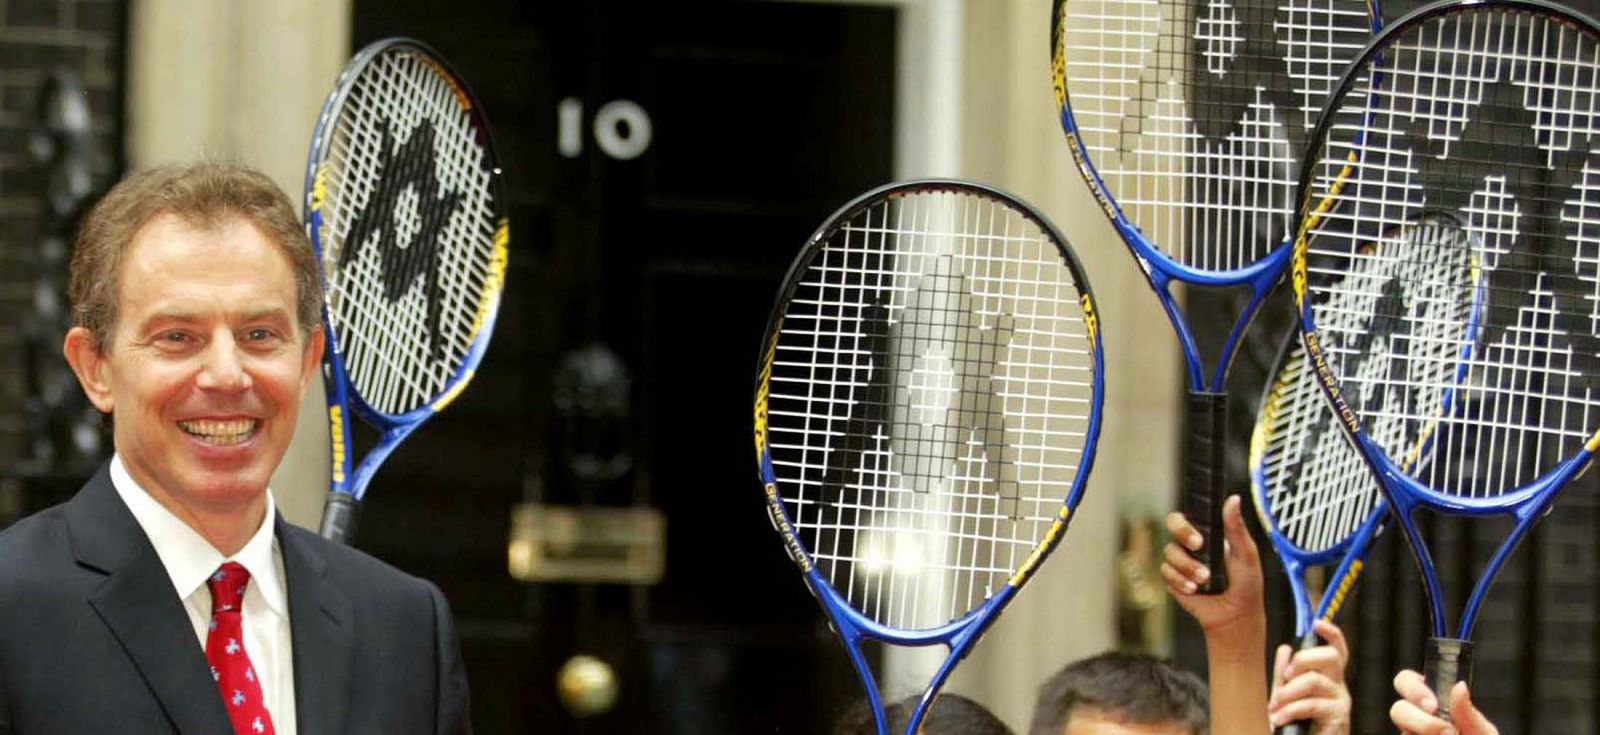 Tony Blair, en un encuentro con nilños y entrenadores de tenis, cuando era primer ministro.